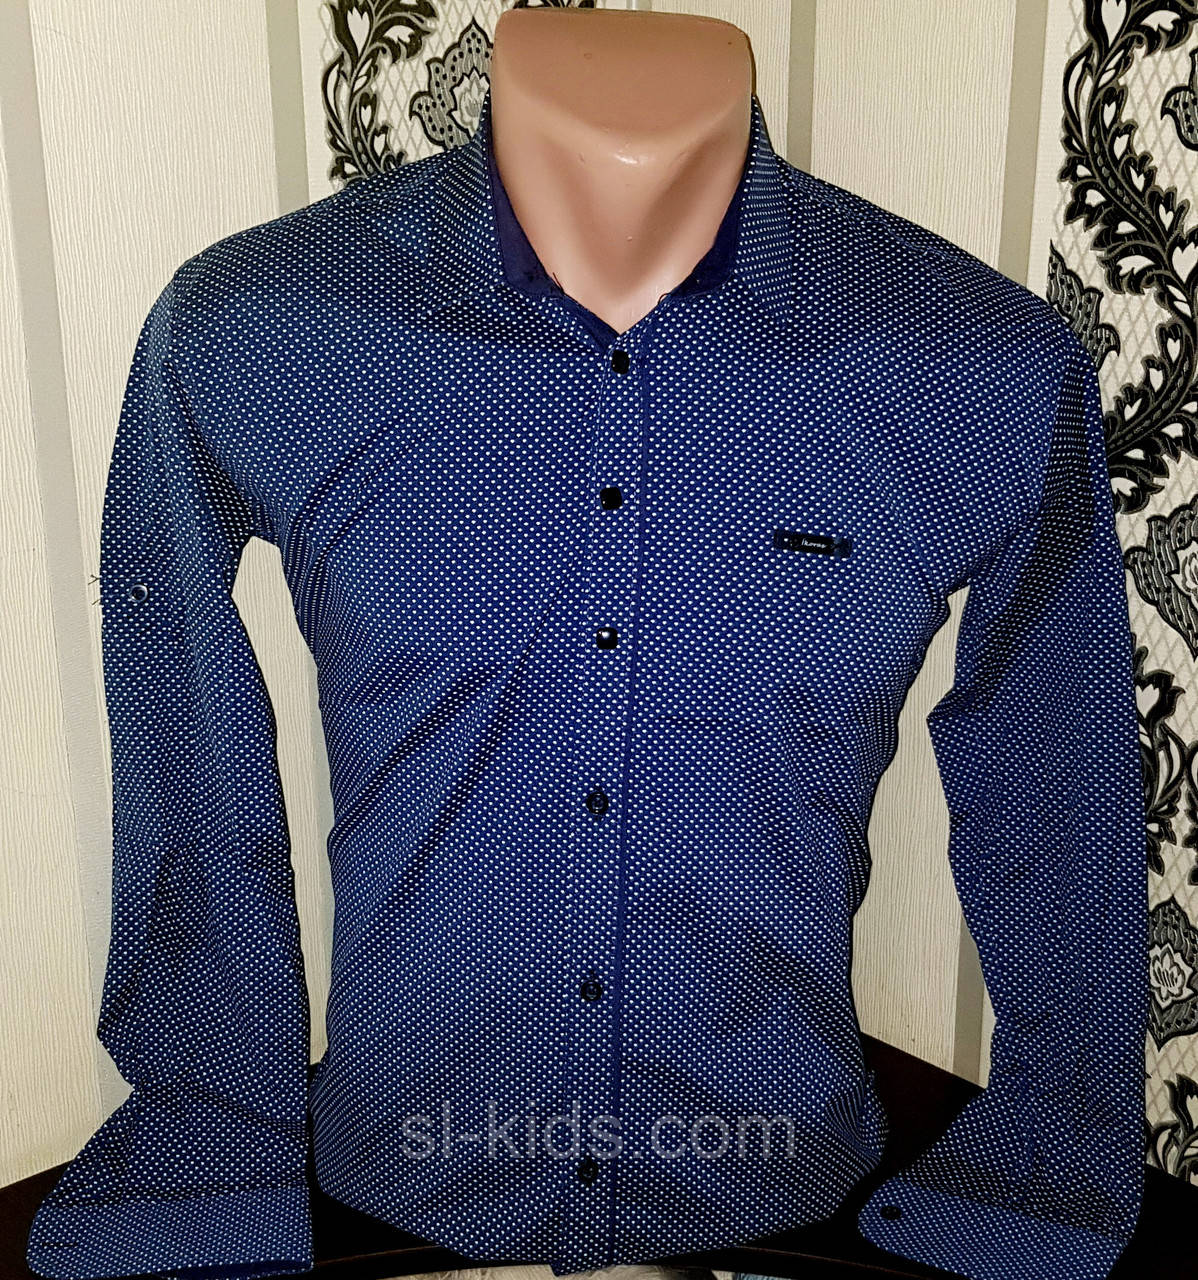 Стрейчева сорочка IKORAS для хлопчика 7-12 років (гурт) (пр. Туреччина)